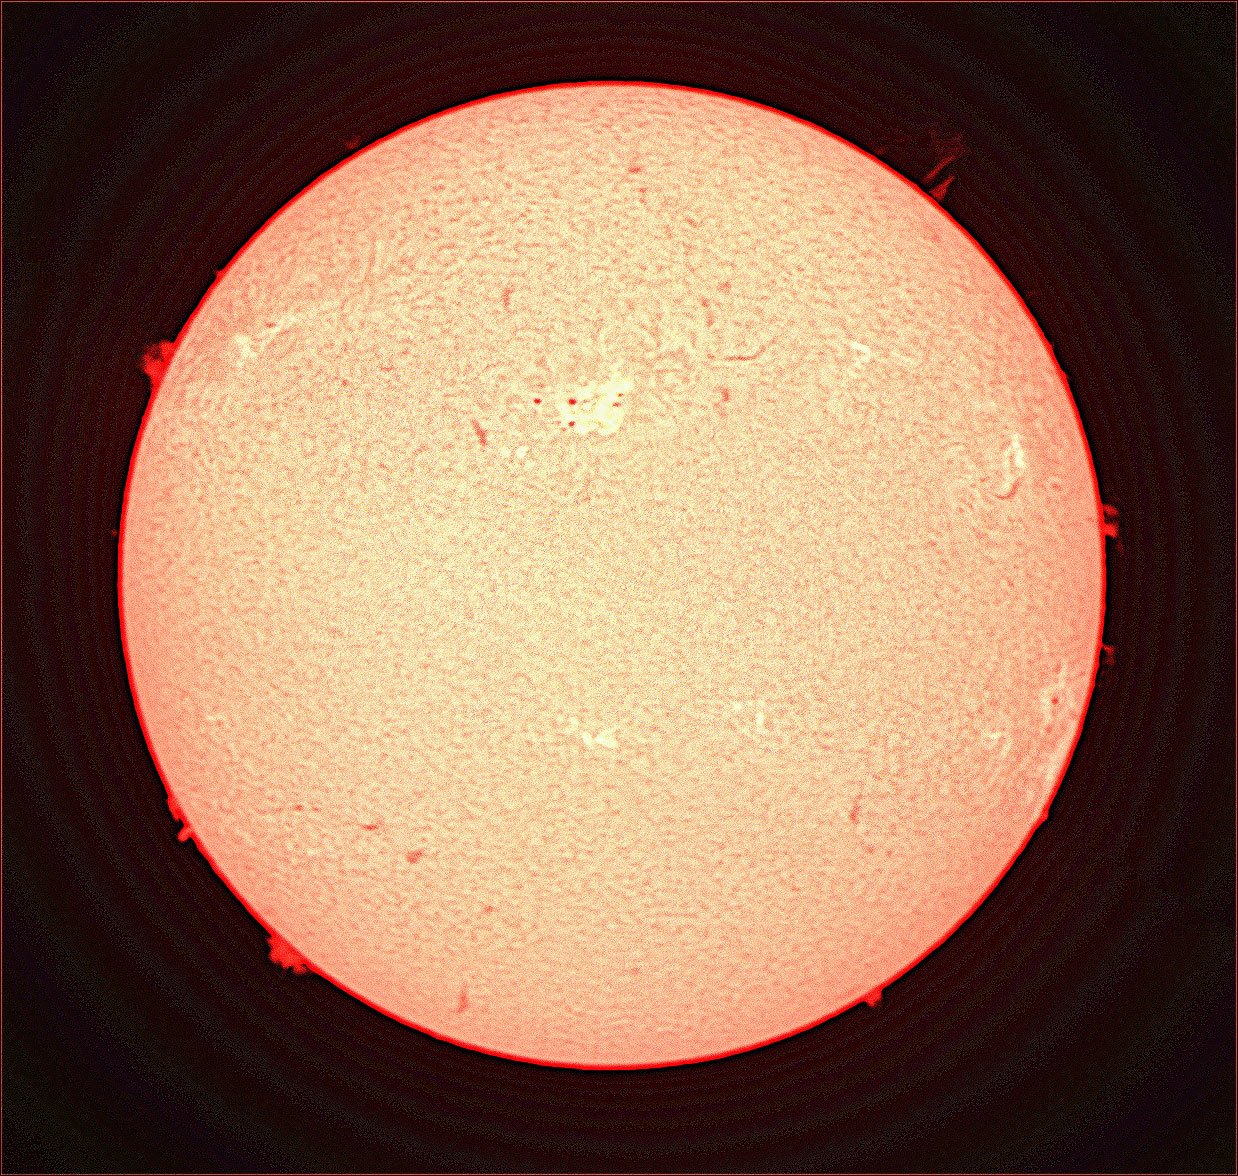 sun-disc-14-may-20.jpg